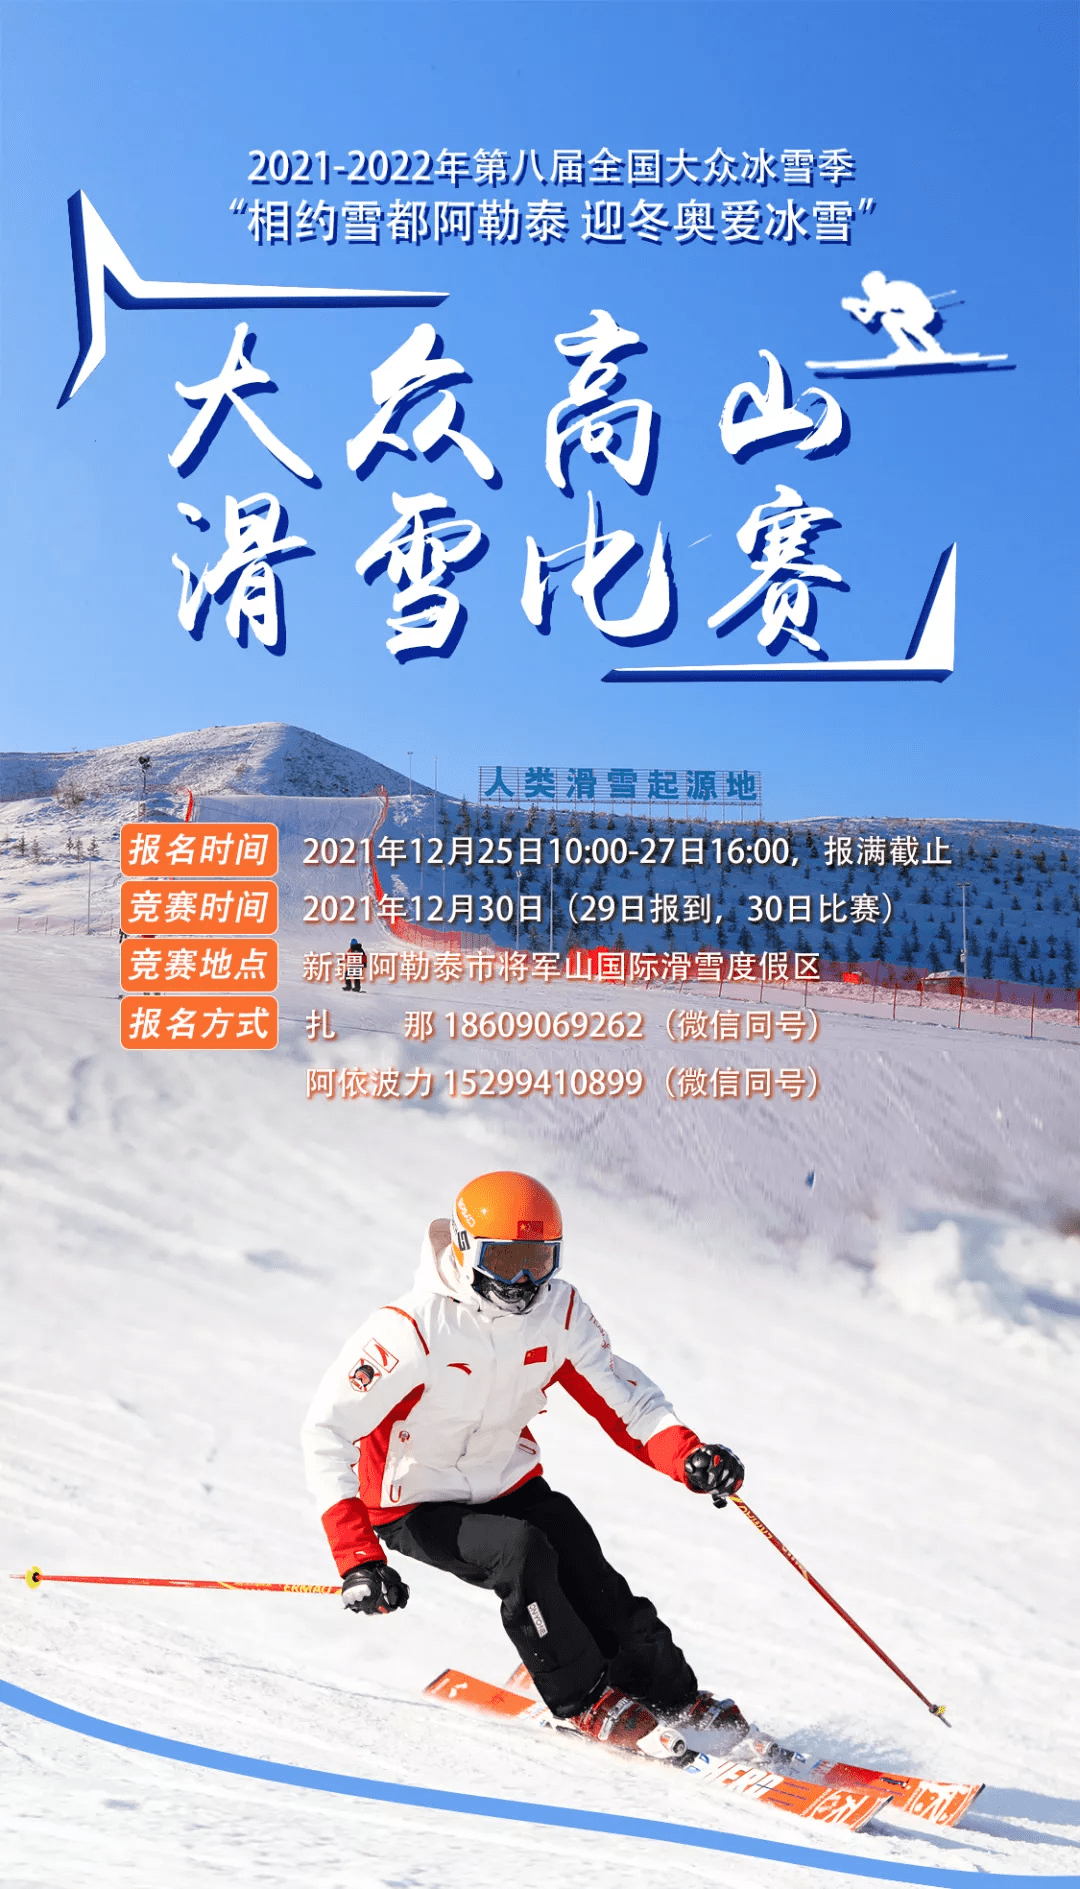 新疆景点- “相约雪都阿勒泰 迎冬奥爱冰雪”大众高山滑雪比赛火热报名中